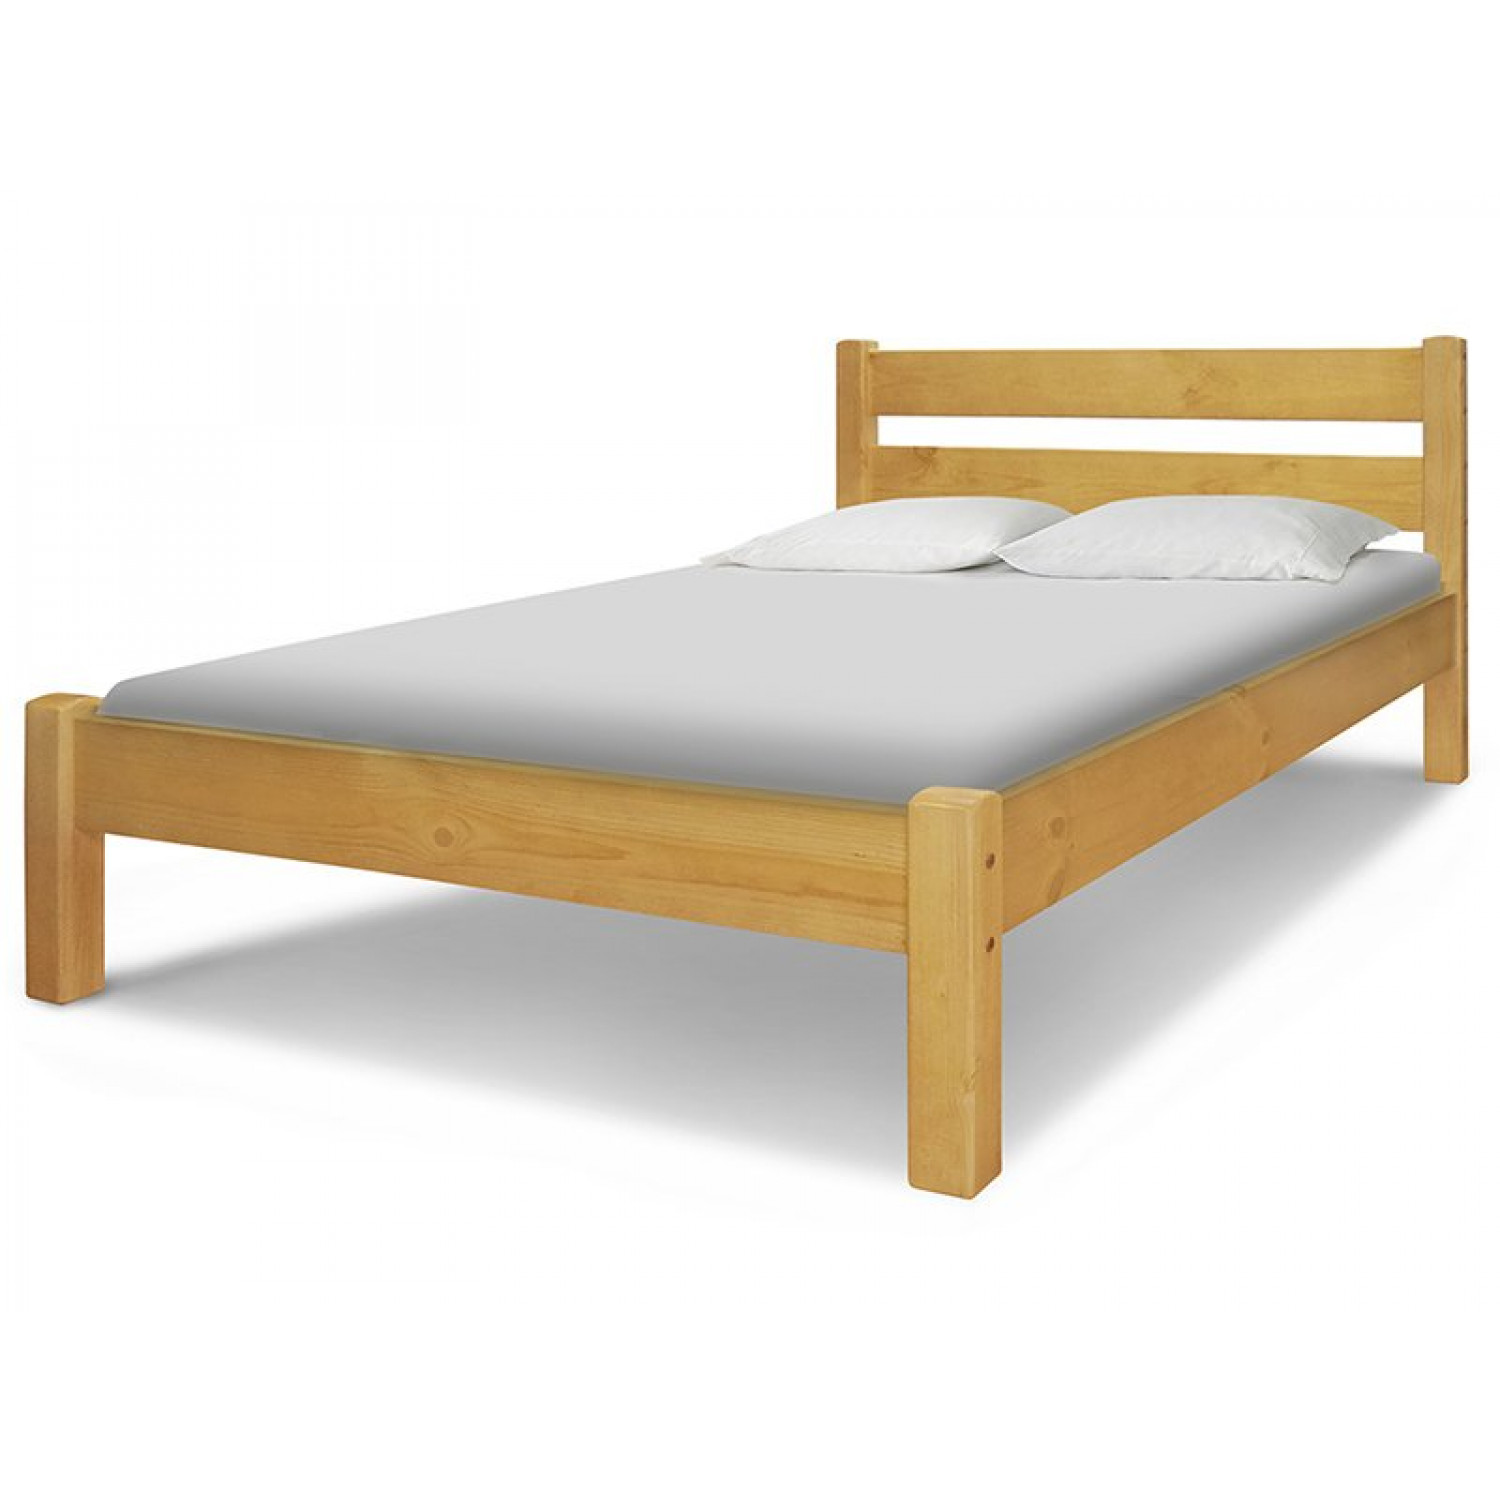 Купить кровать из массива в спб. Кровать ВМК-Шале мантра. Кровать ikea 160 200 из массива сосны. Икеа кровать одноместная деревянная.